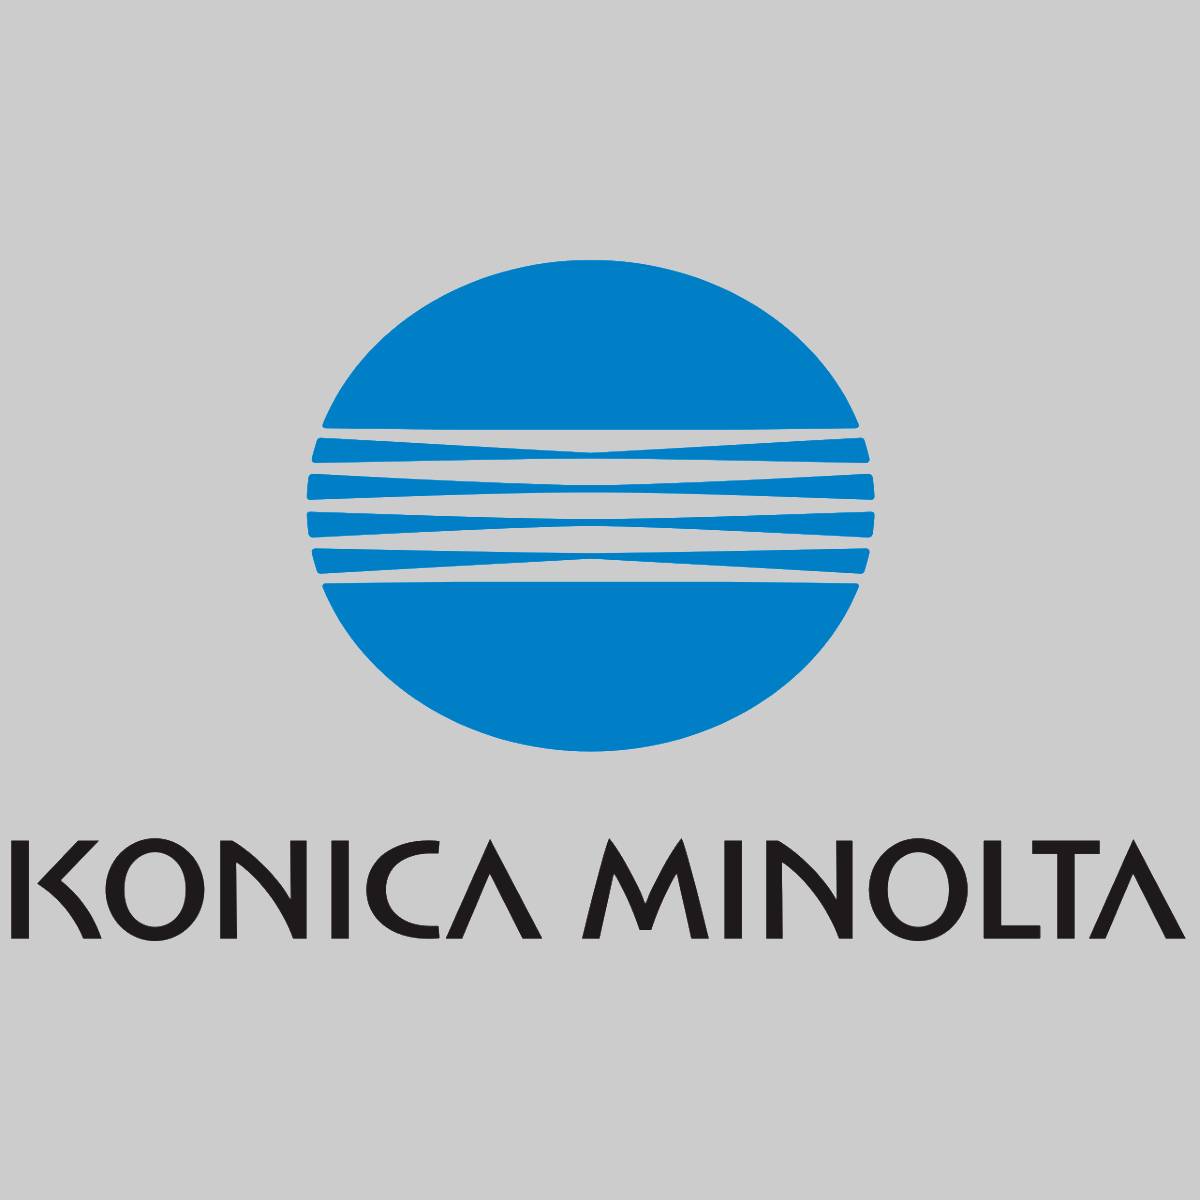 "Original Konica Minolta Waste Container 4049111 für Bizhub C340 C351 C450 CF 22